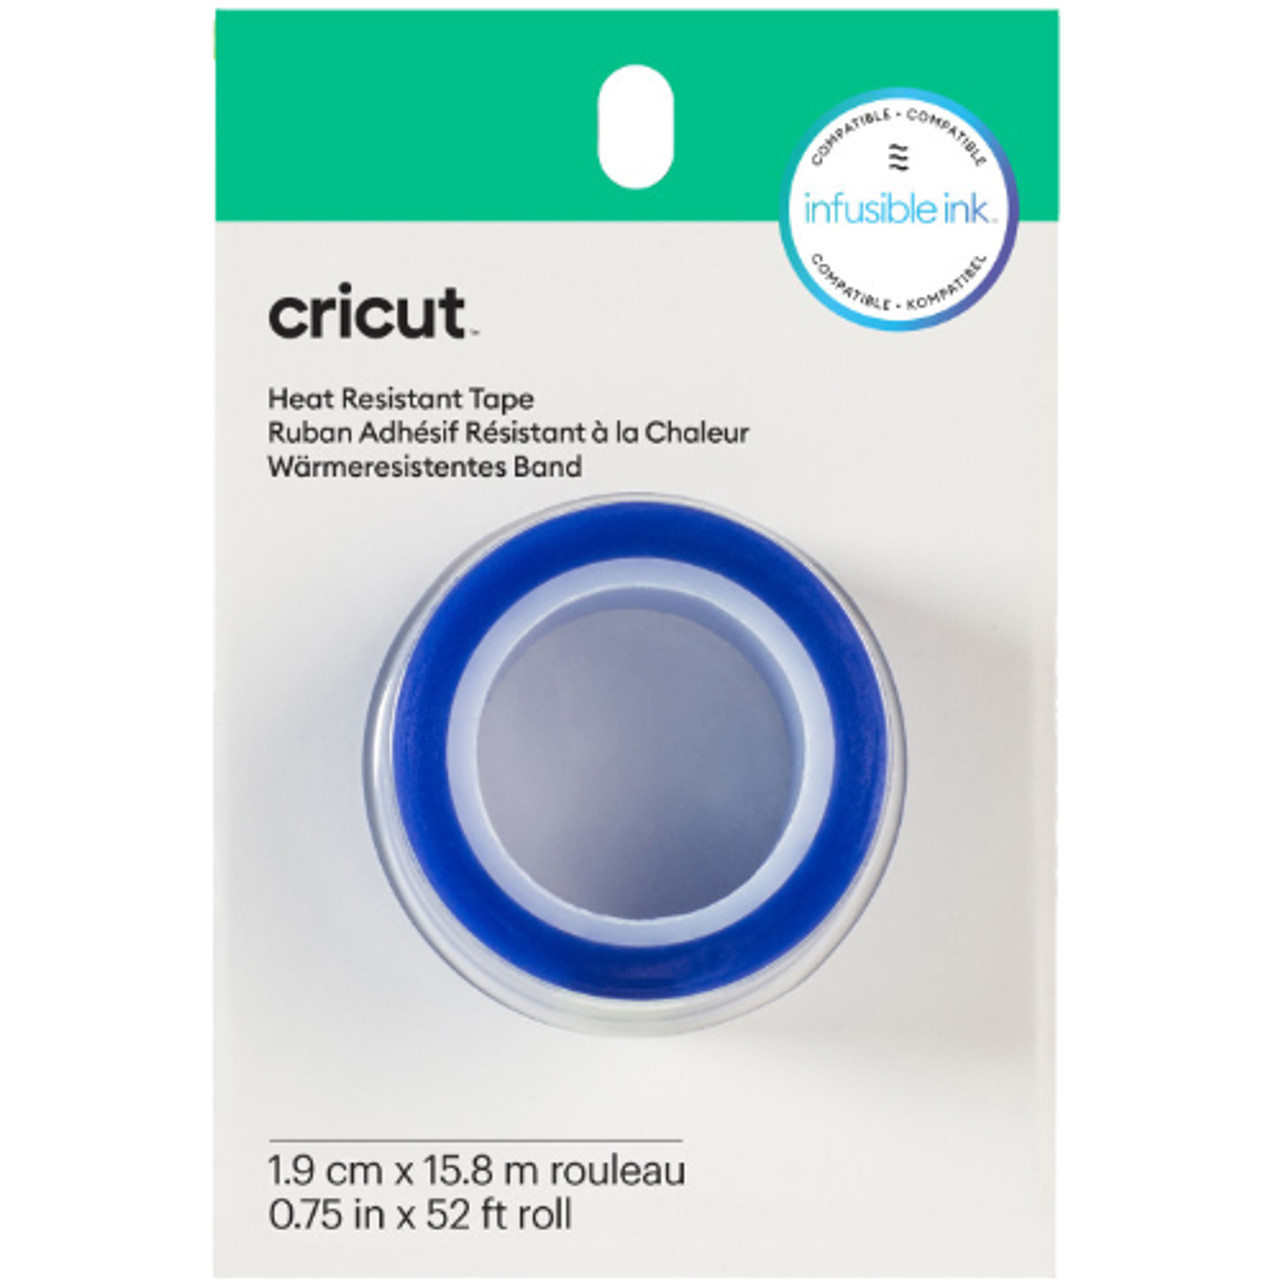 Cricut Heat Resistant Tape - 1.9cm x 15.8m (1)